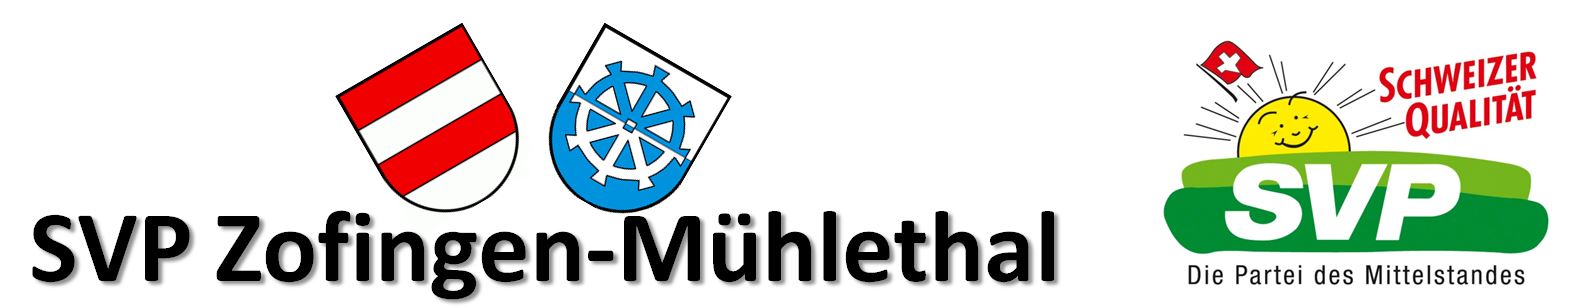 SVP Zofingen-Mühlethal